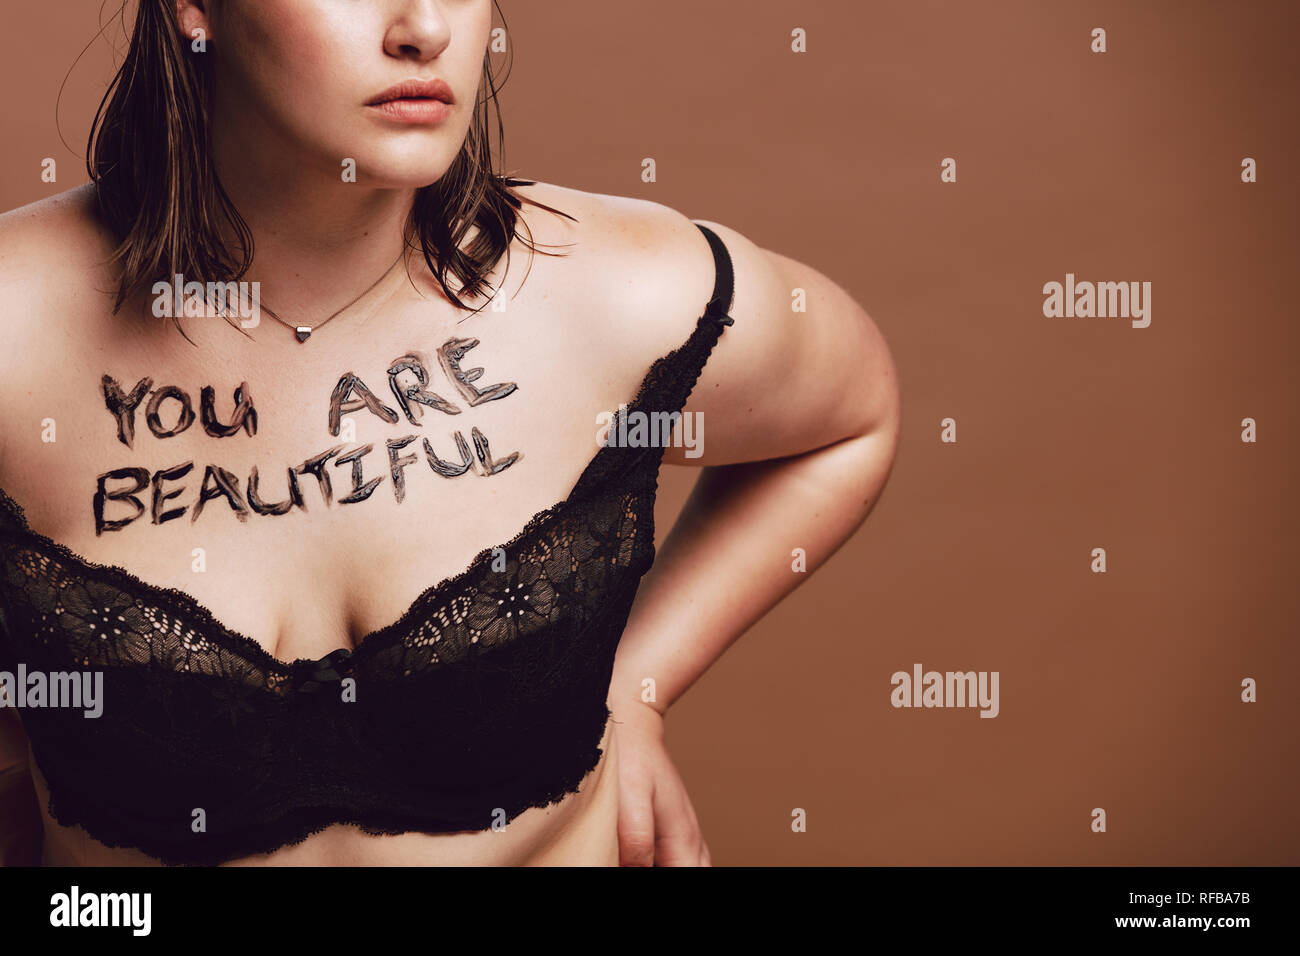 Cropped shot of woman surdimensionnée en soutien-gorge noir. Femme avec "Vous êtes belles", écrit sur son corps contre fond brun Banque D'Images